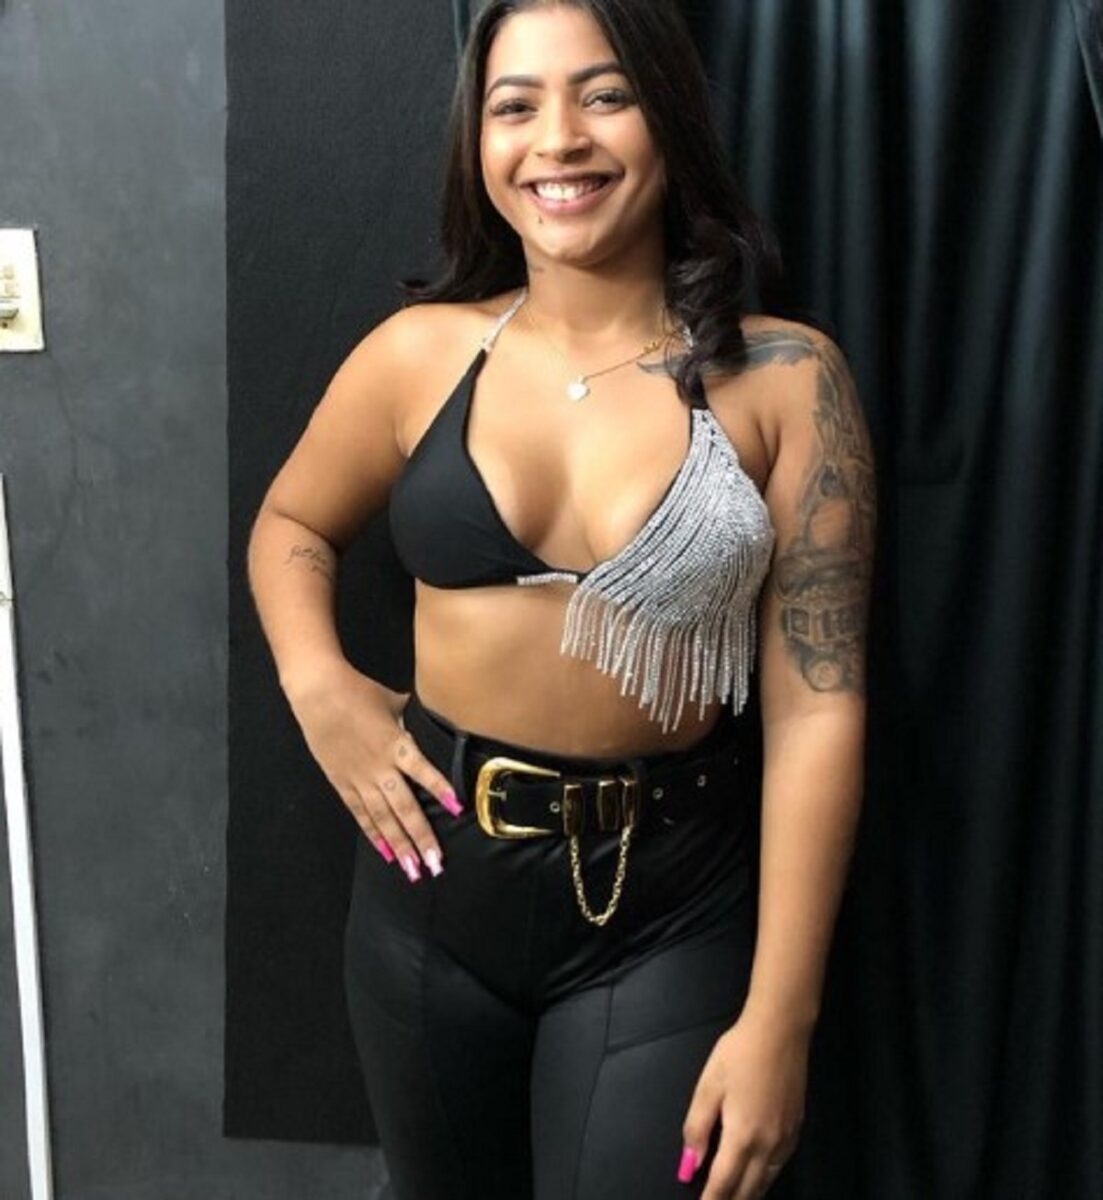 Samynha Silva l'influencer è stata uccisa mentre usciva da un nightclub in Brasile